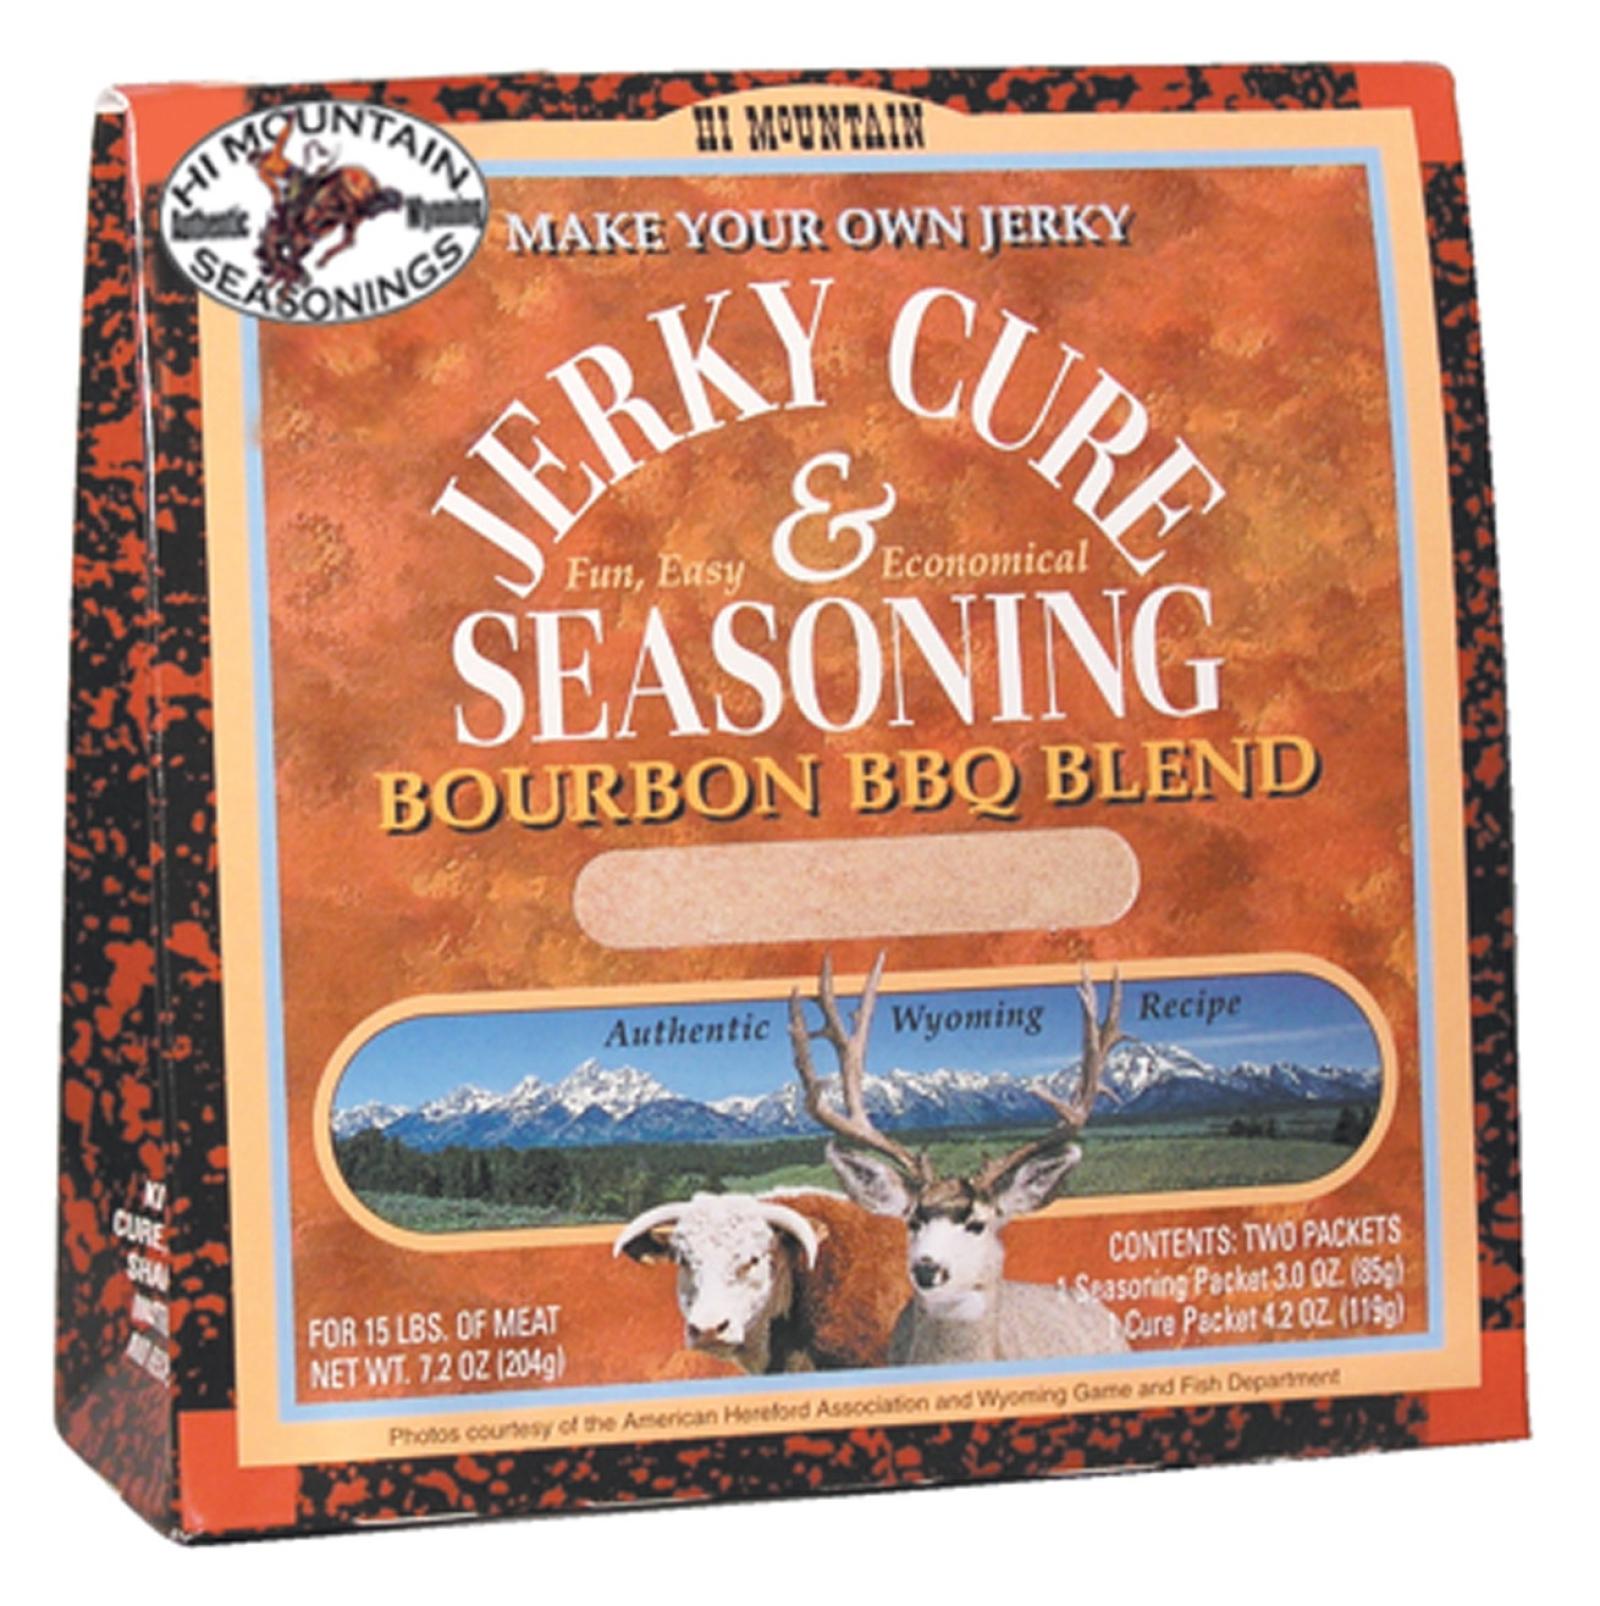 Hi Mountain Bourbon BBQ Blend Jerky Kit